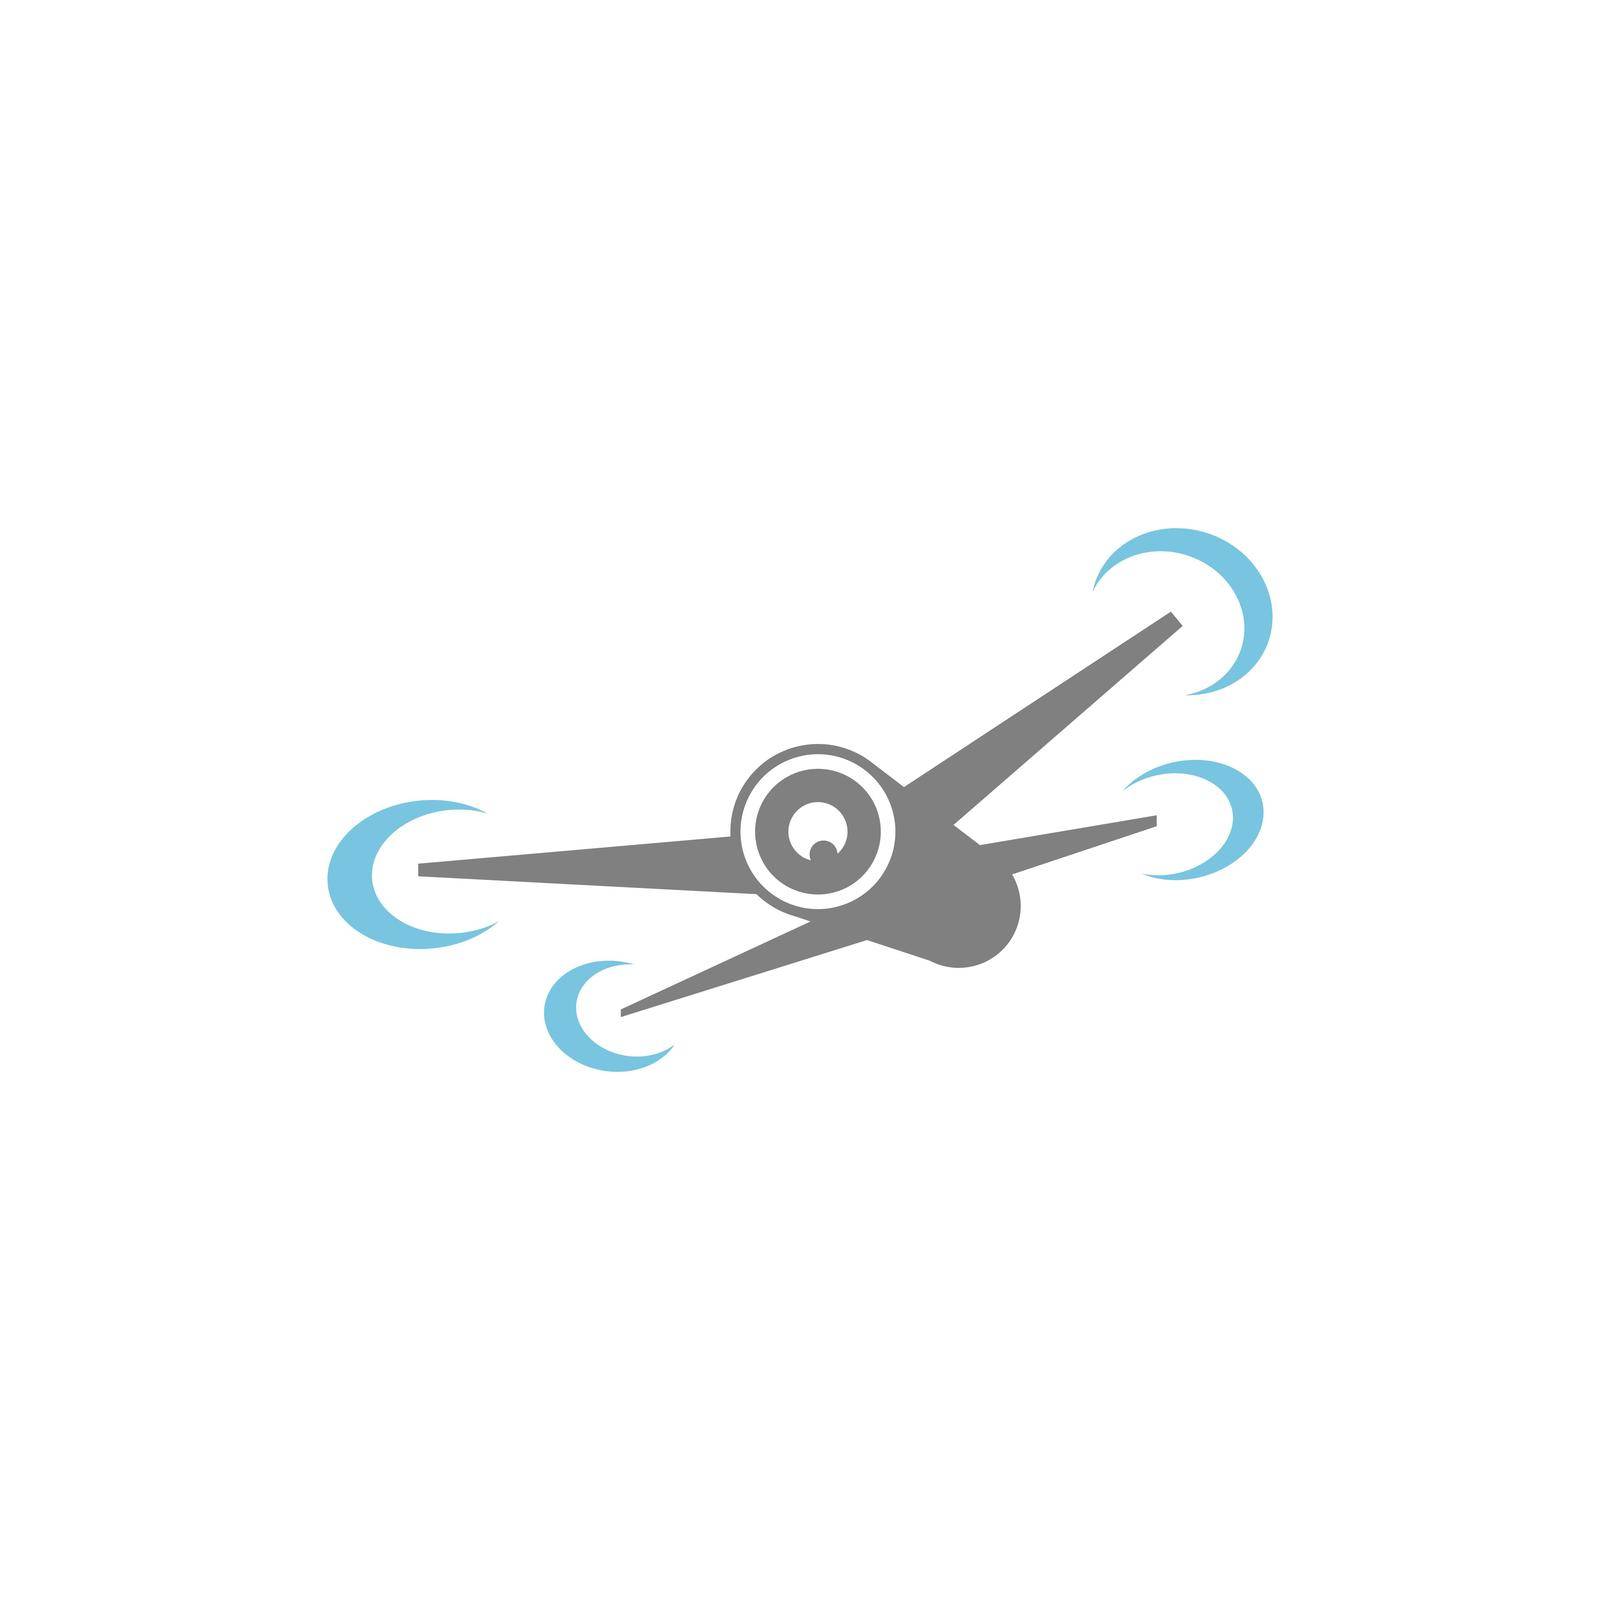 Drone icon logo design illustration vector template